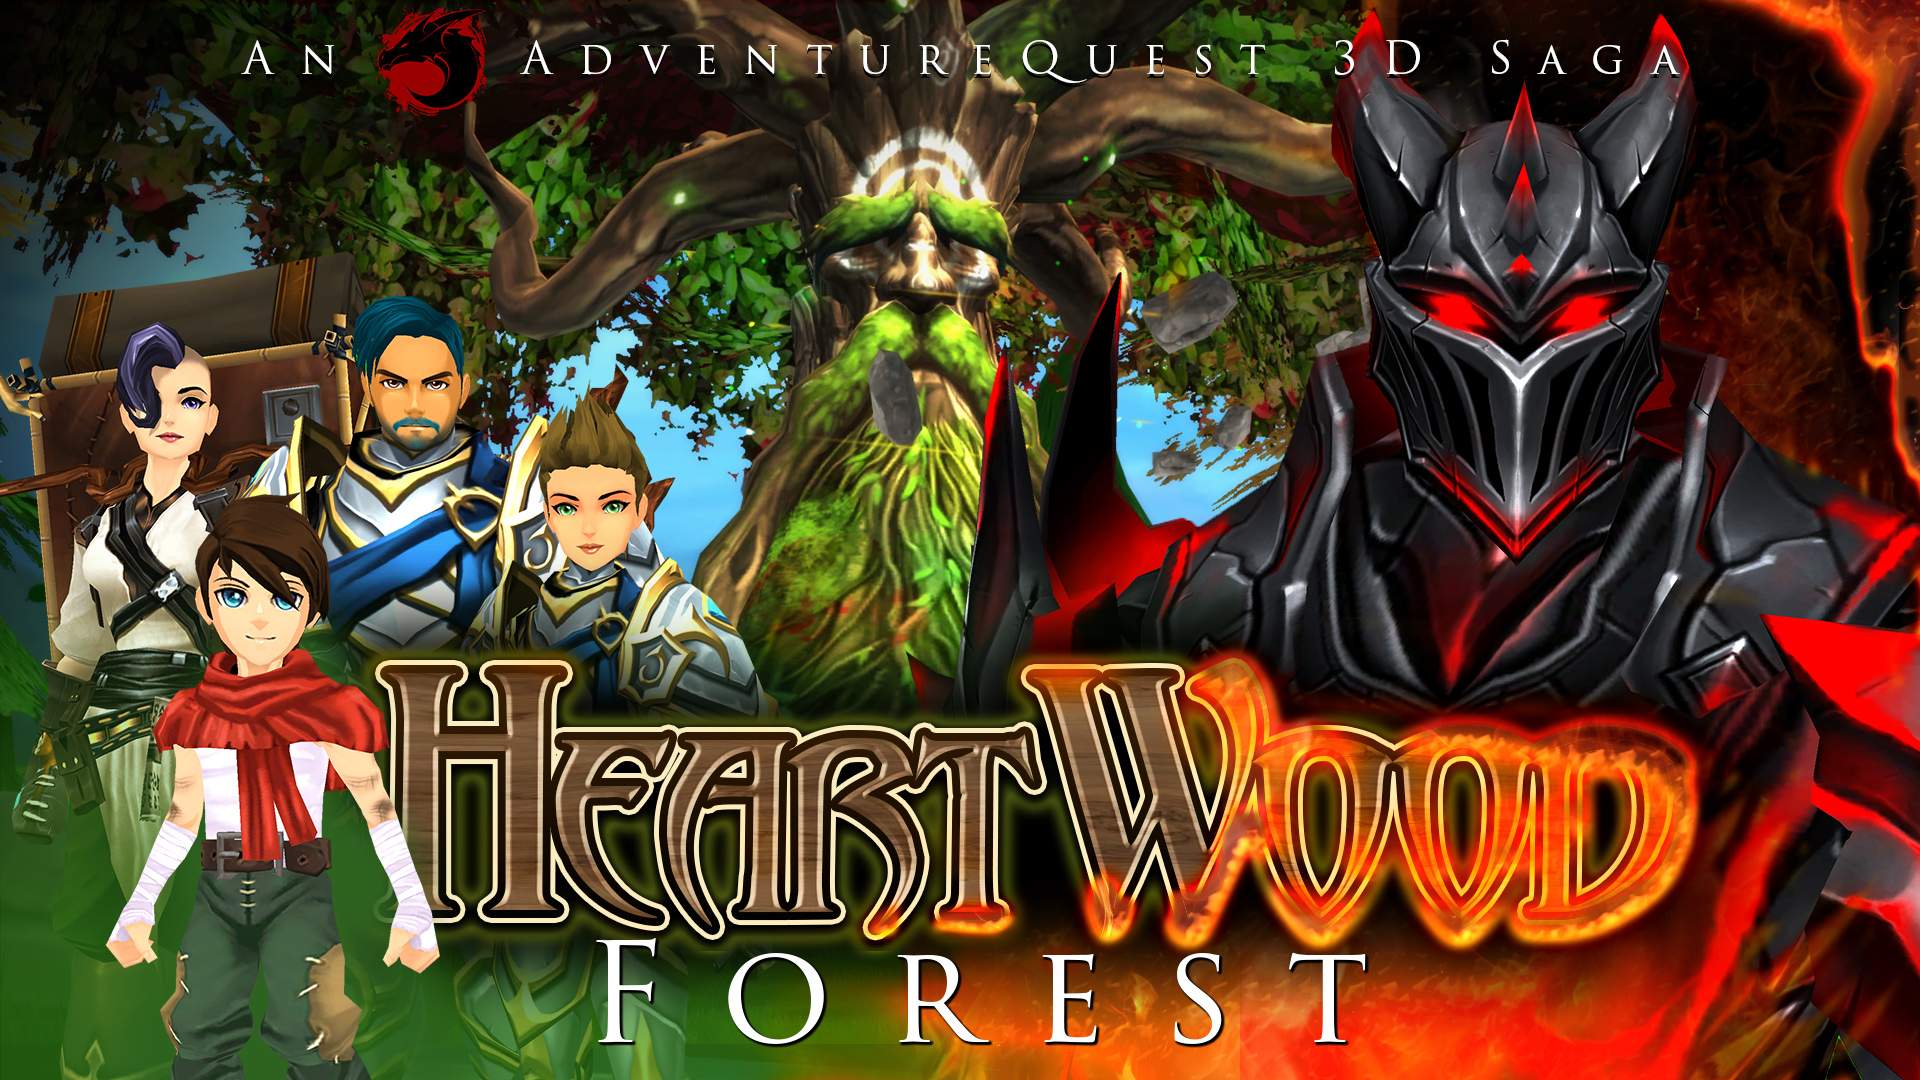 Heartwood Forest Saga - Adventure Quest 3D, Cross Platform MMORPG